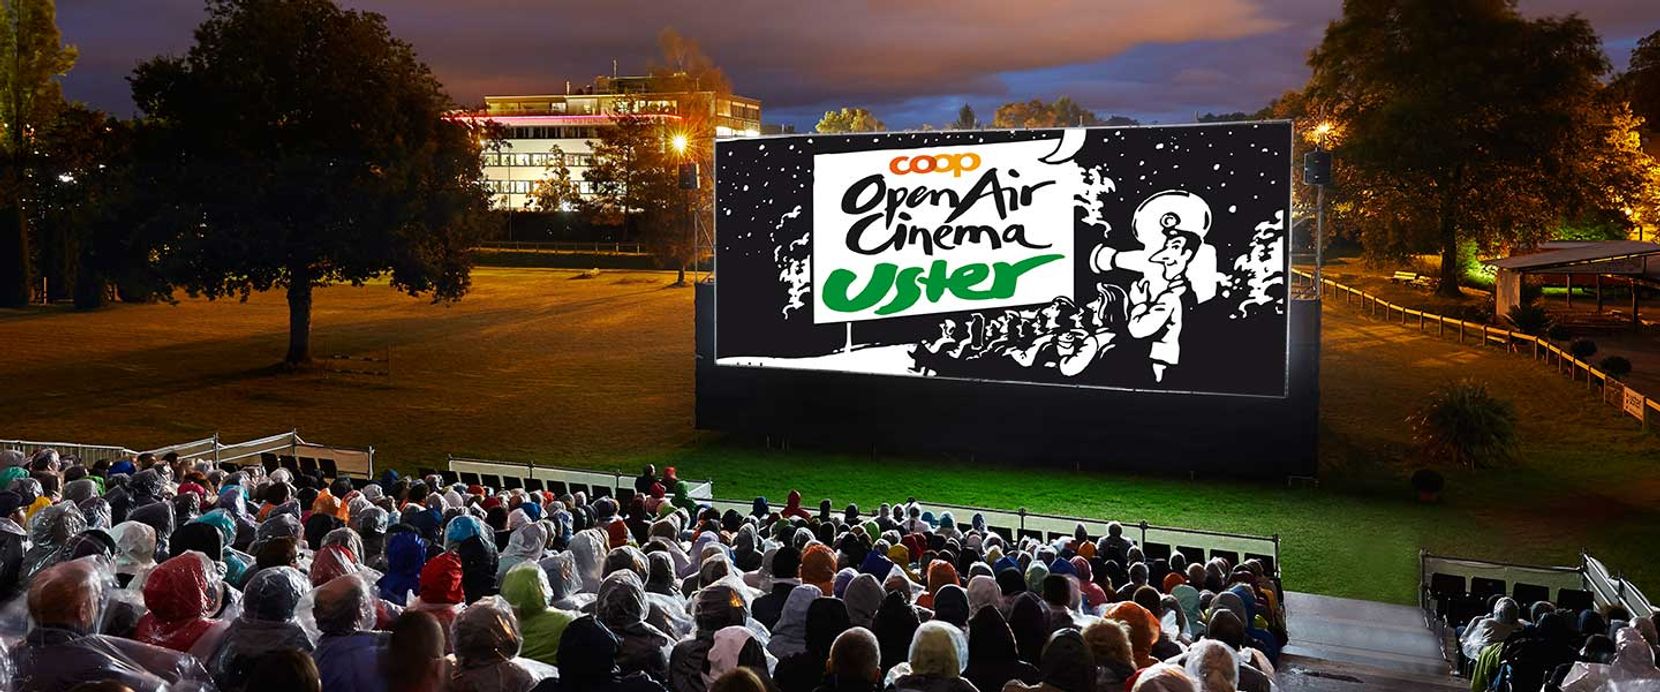 Das Foto zeigt das Open Air Cinema Uster im Buchholz.